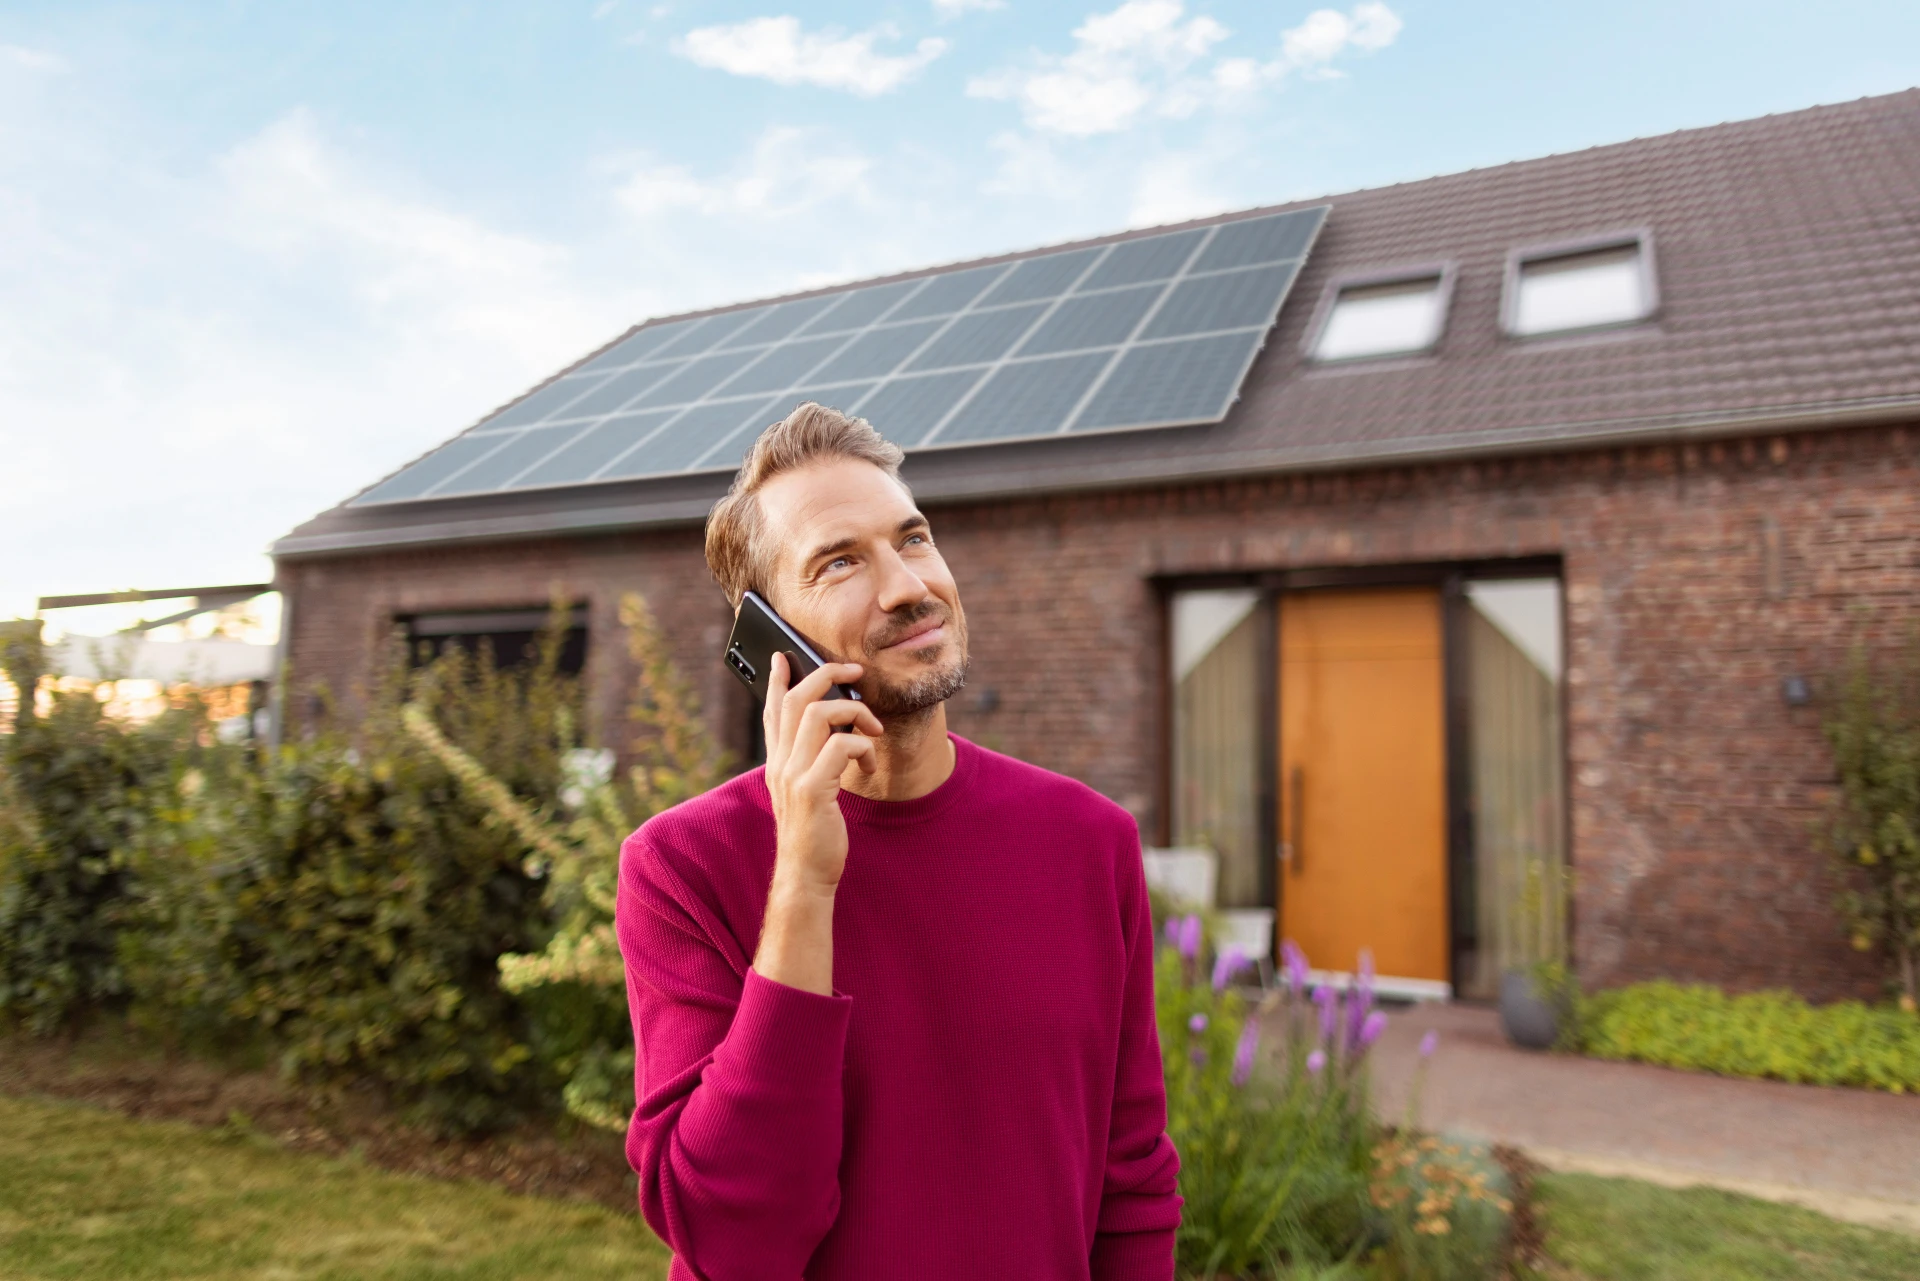 Ein Mann hat ein Telefonat im Garten vor einem Haus mit einer Photovoltaik Anlage, welche für die Erzeugung von Ökostrom genutzt wird.